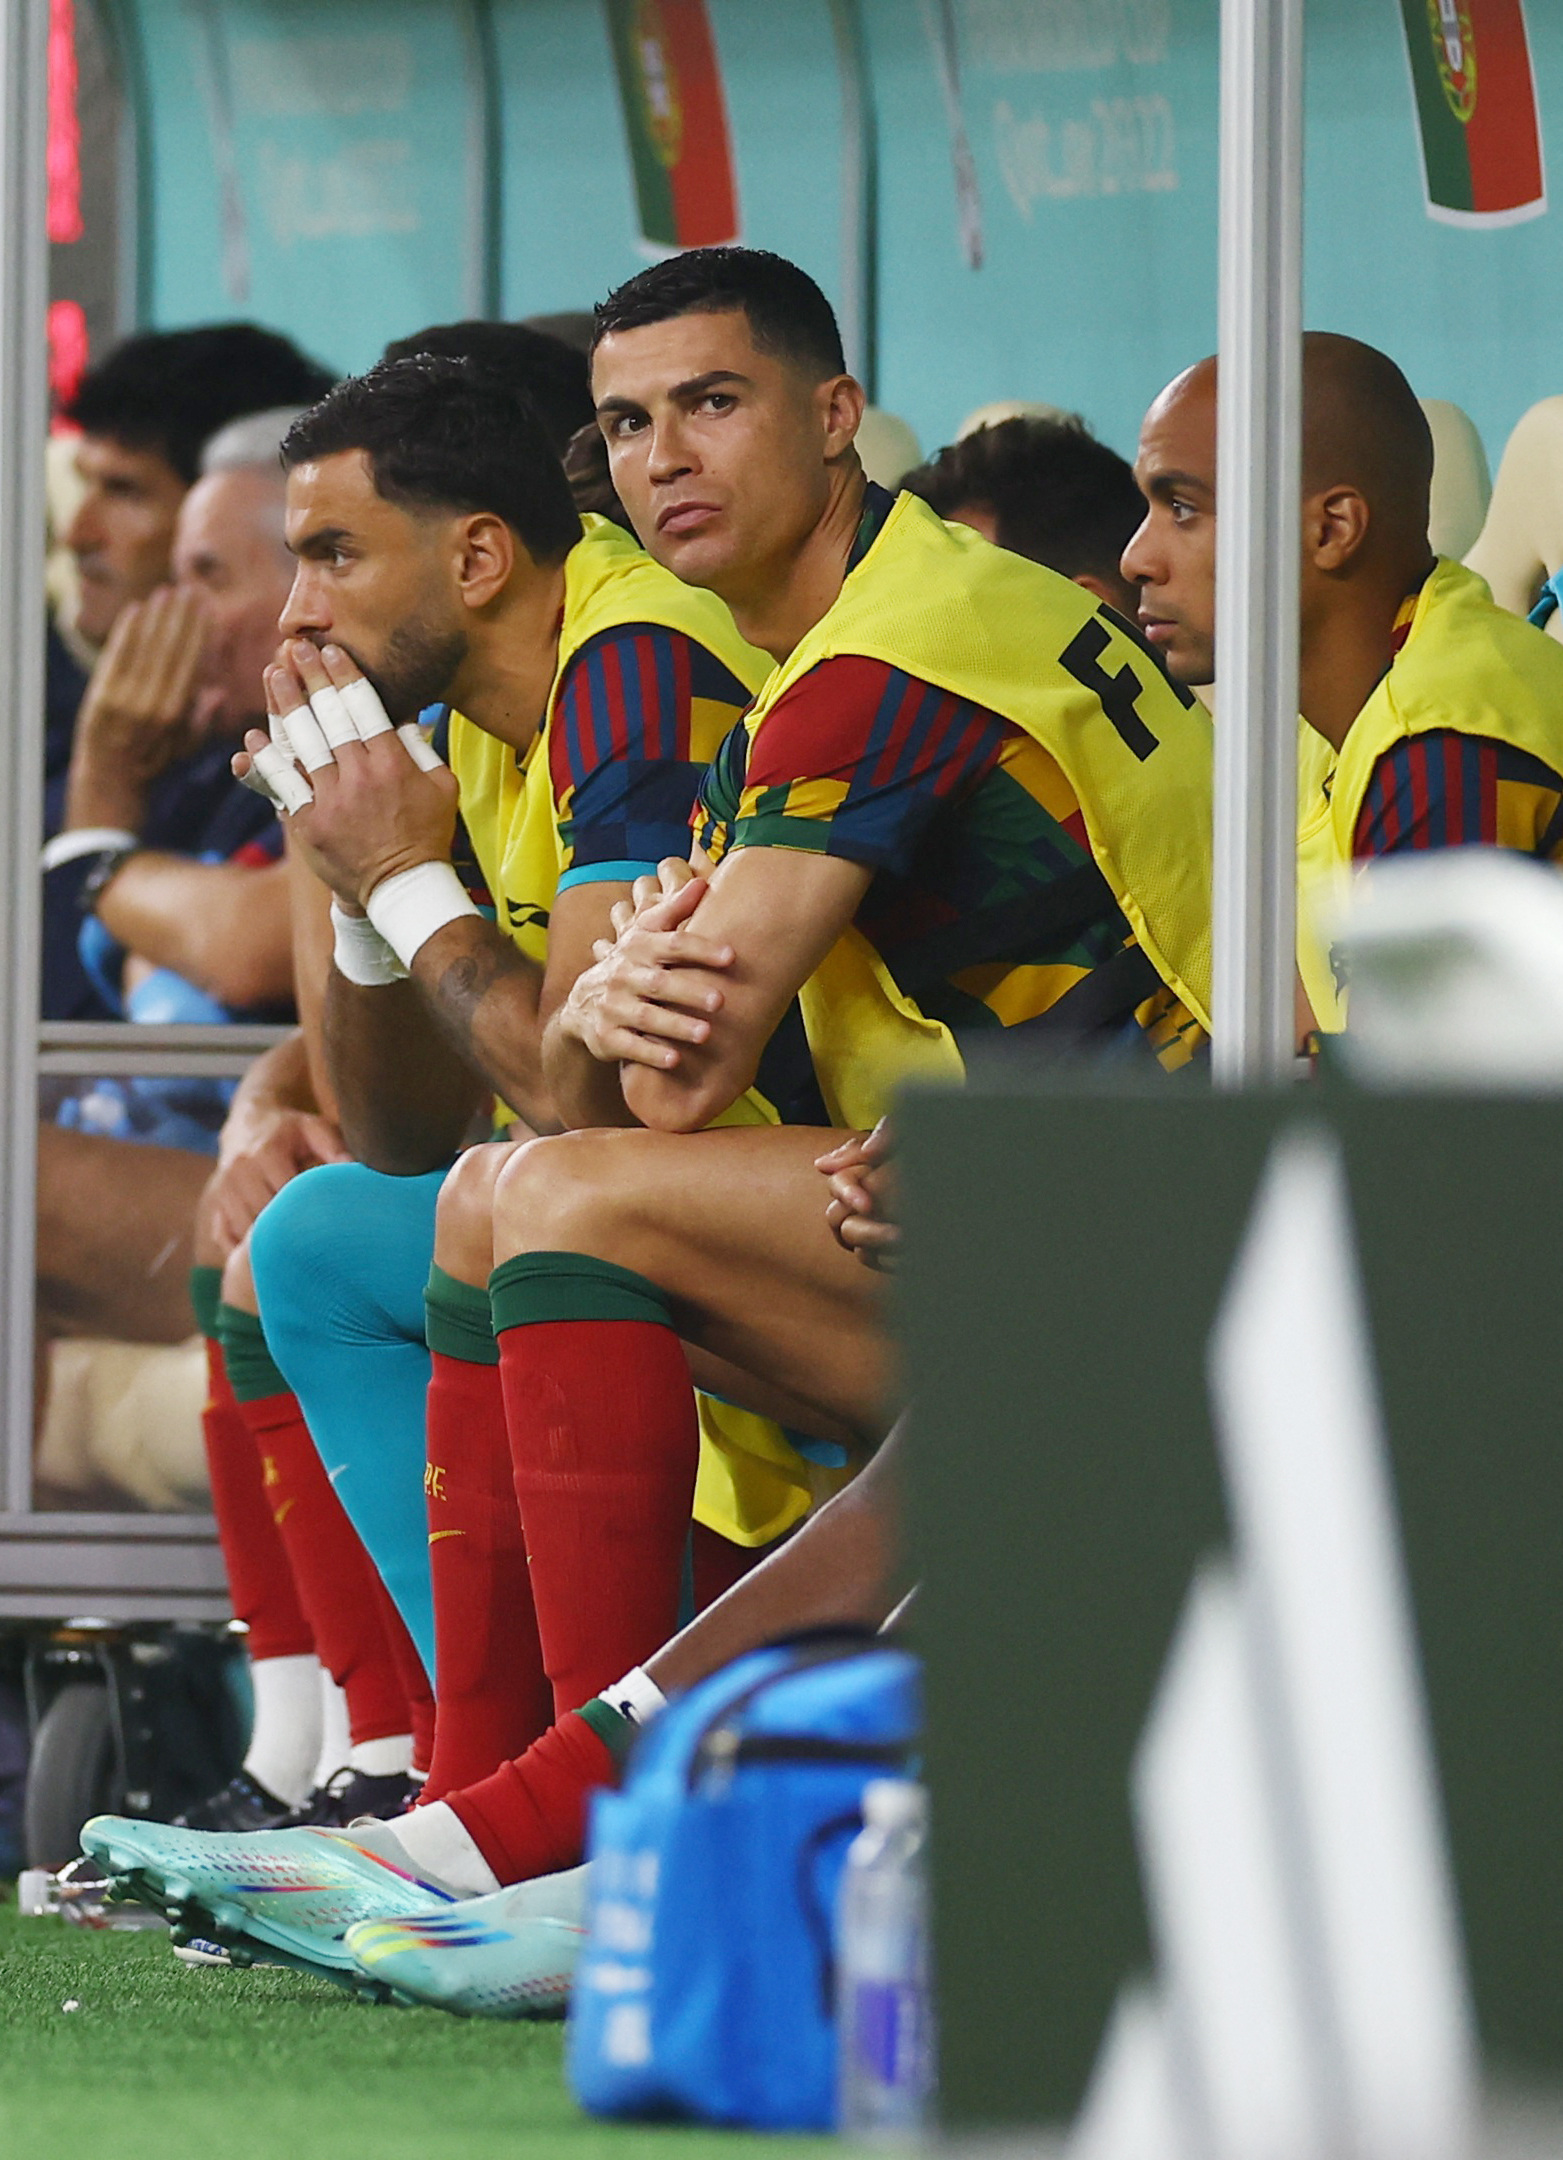 Збірна Португалії, залишивши свого лідера Роналду на лаві запасних «порвала» Швейцарію REUTERS/Kai Pfaffenbach